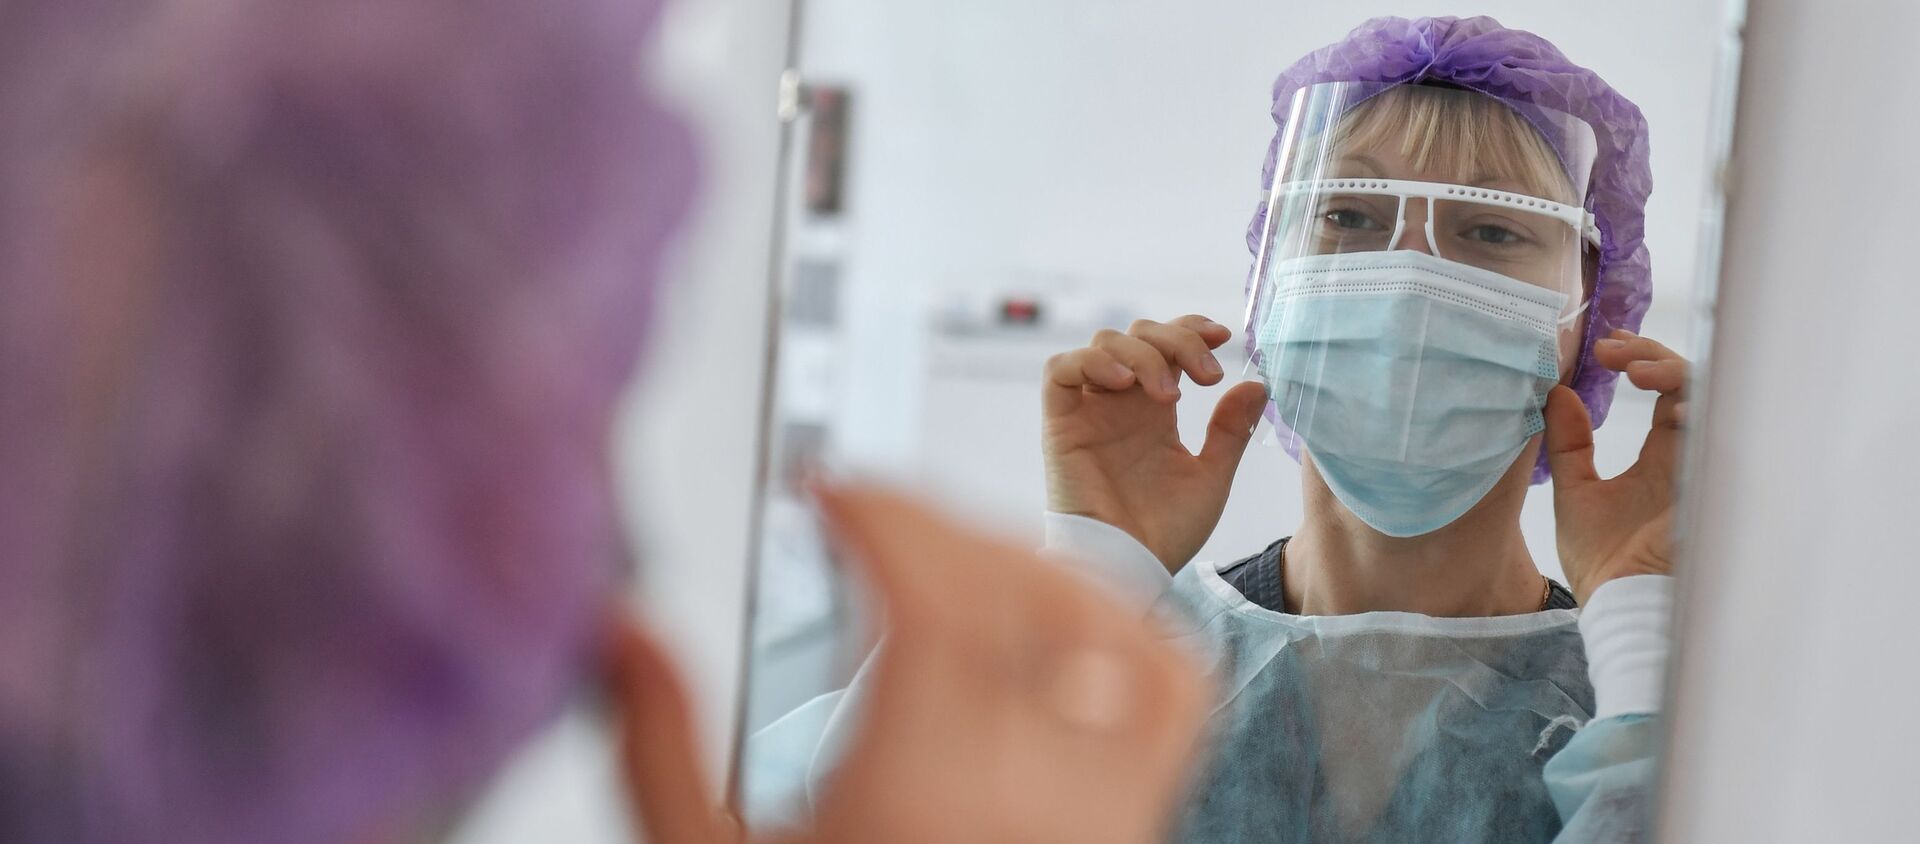 Медсестра поправляет лицевой щиток перед сменой в больнице с коронавирусом  - Sputnik Казахстан, 1920, 05.03.2021